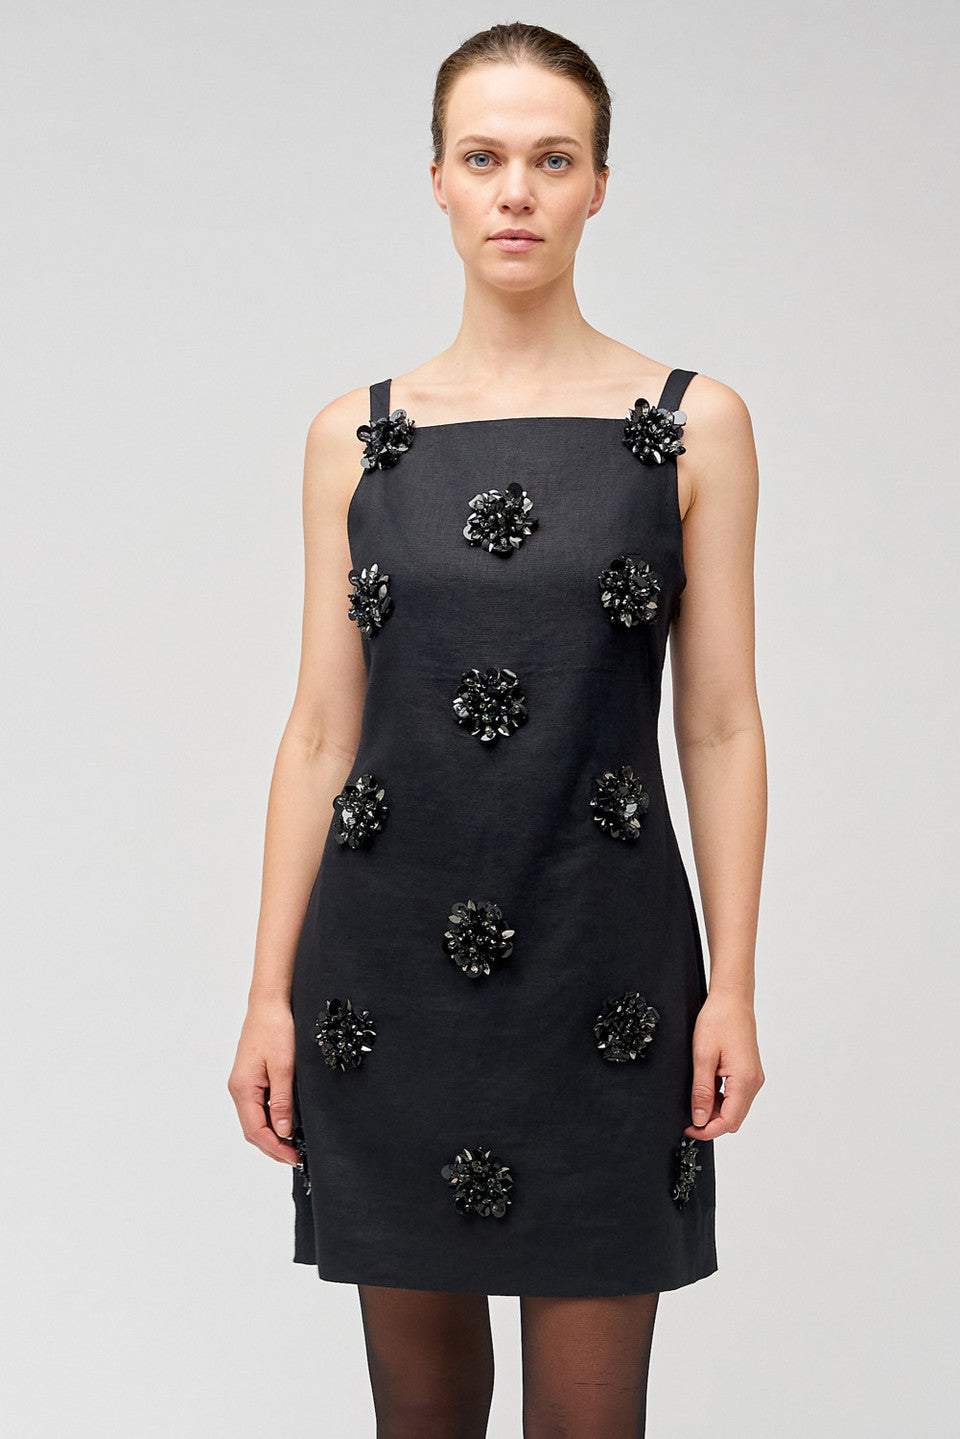 OROTON - FLOWER SEQUIN SHIFT DRESS - BLACK